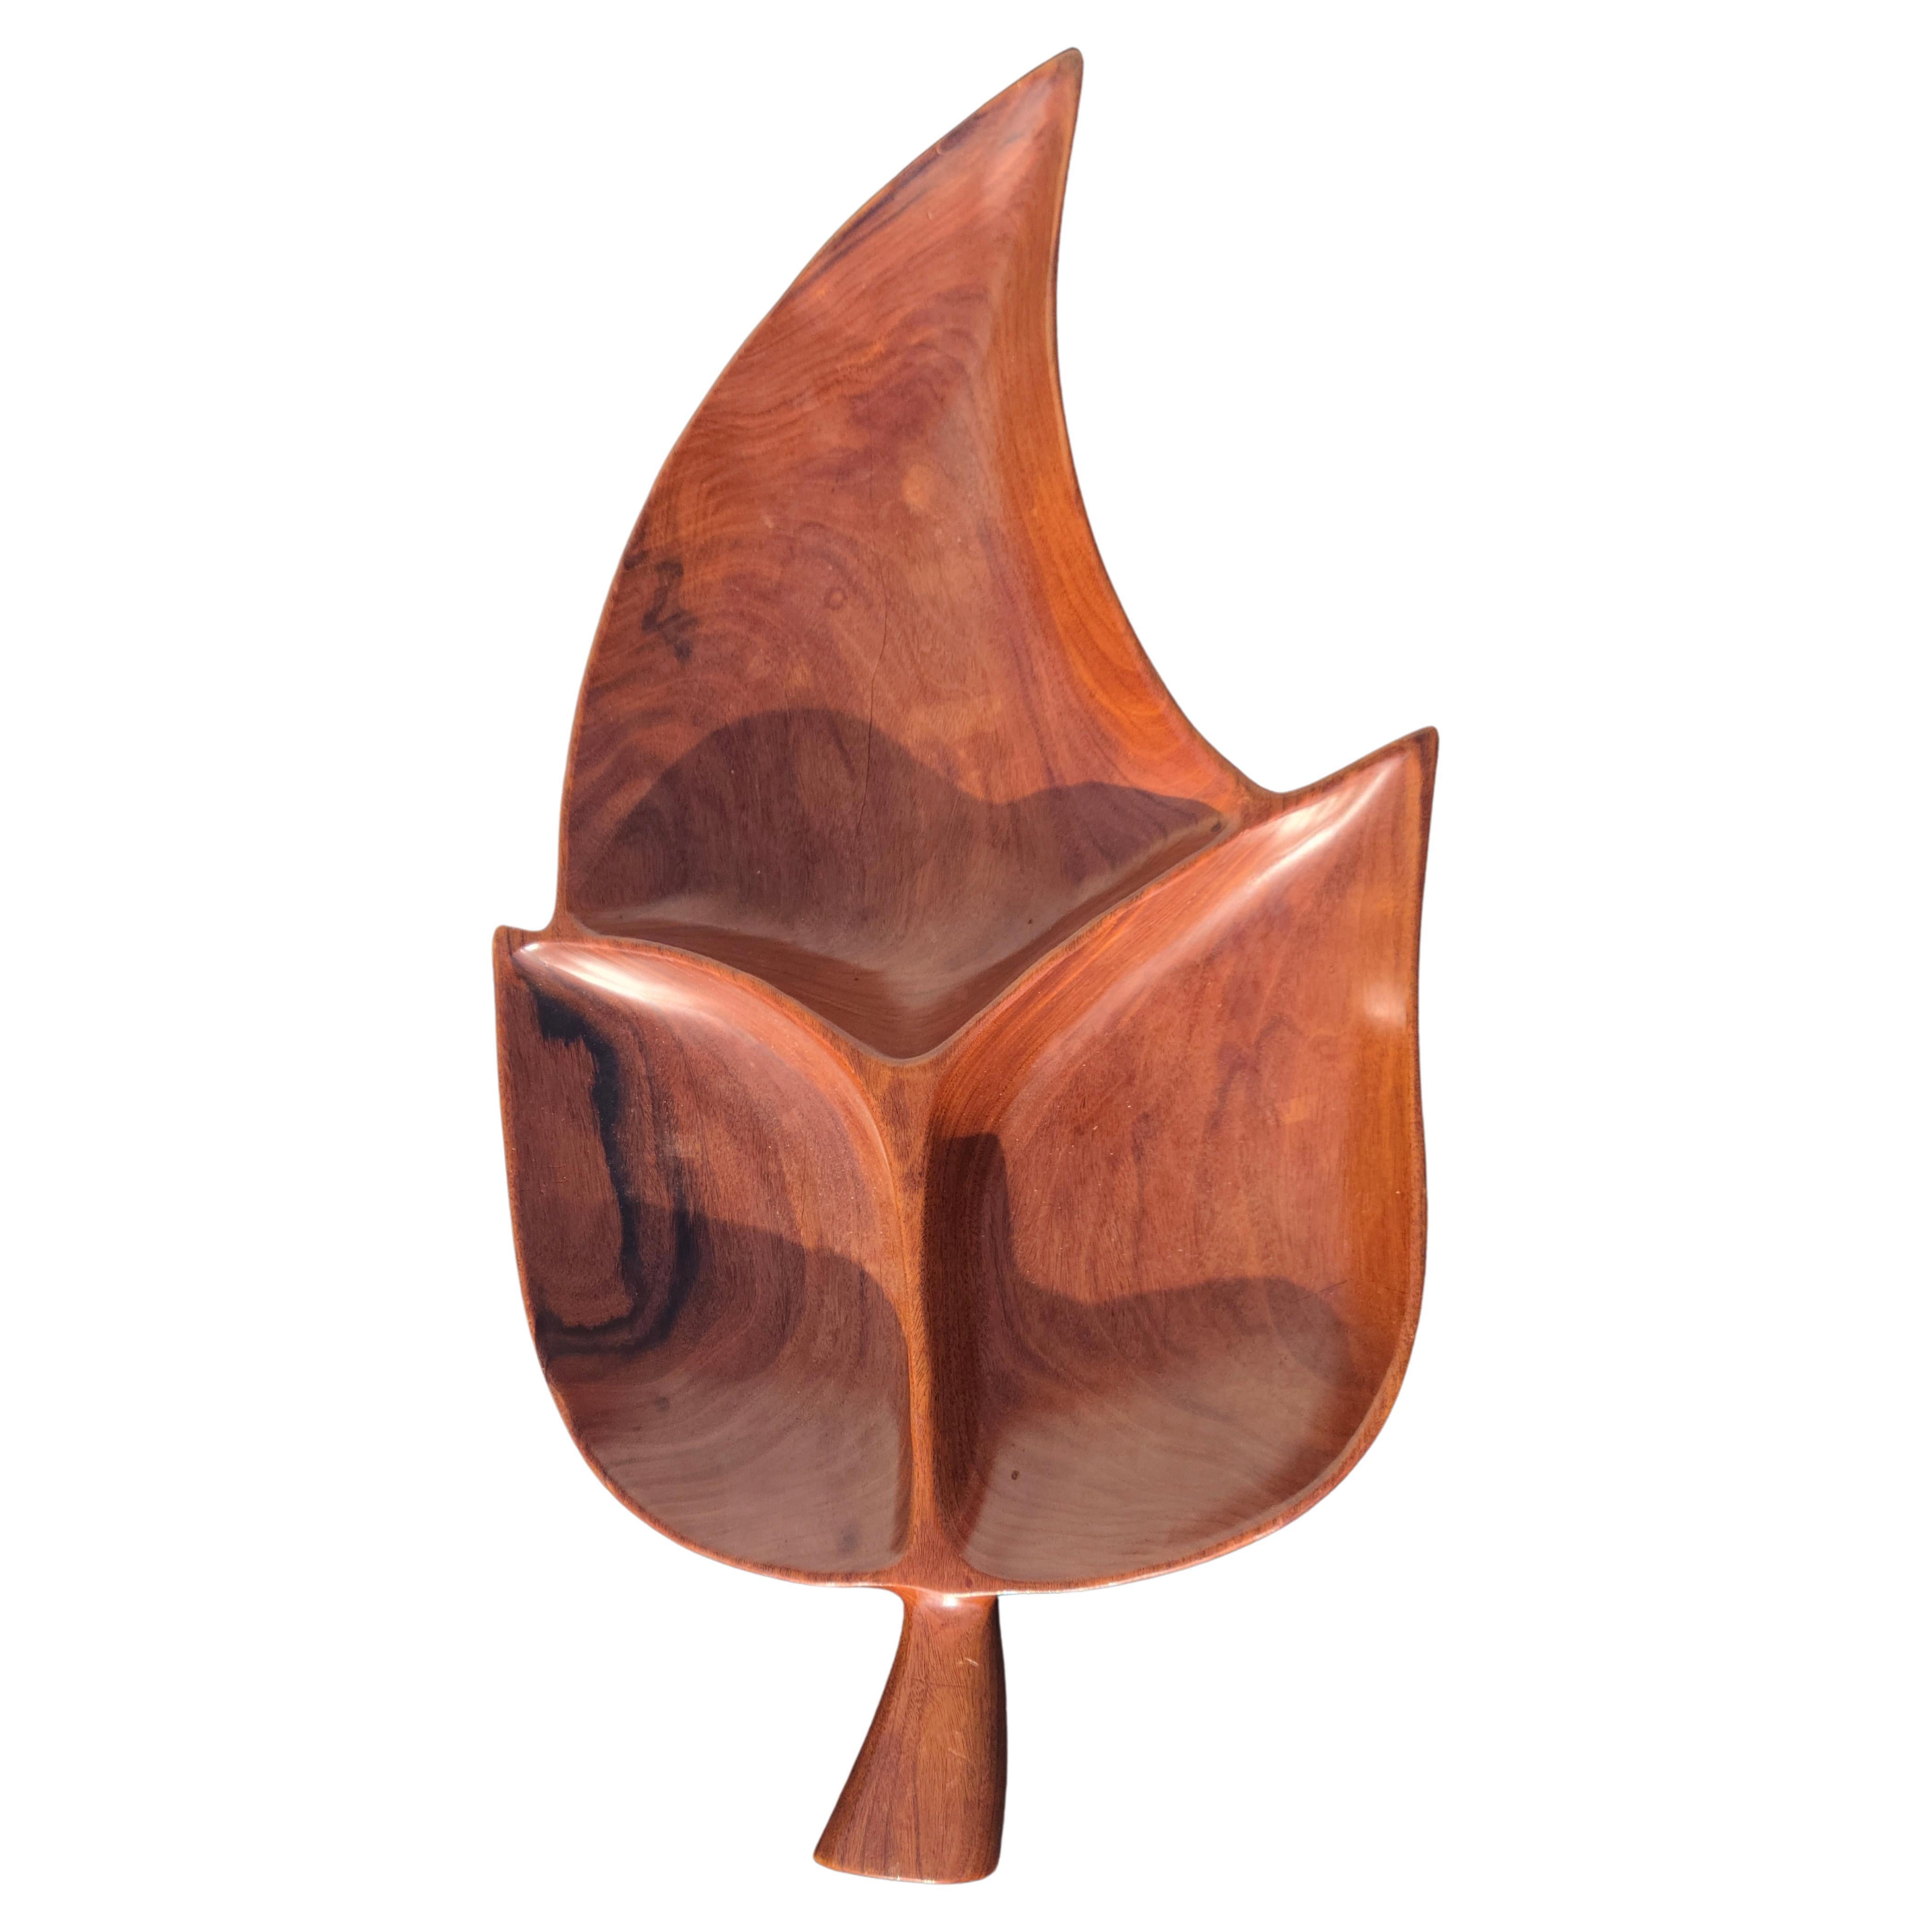 Schale aus Holz geschnitzt 
Scheint aus Eisenholz zu sein, das in Mexiko gefunden wurde.
Sehr dichtes exotisches Holz. 